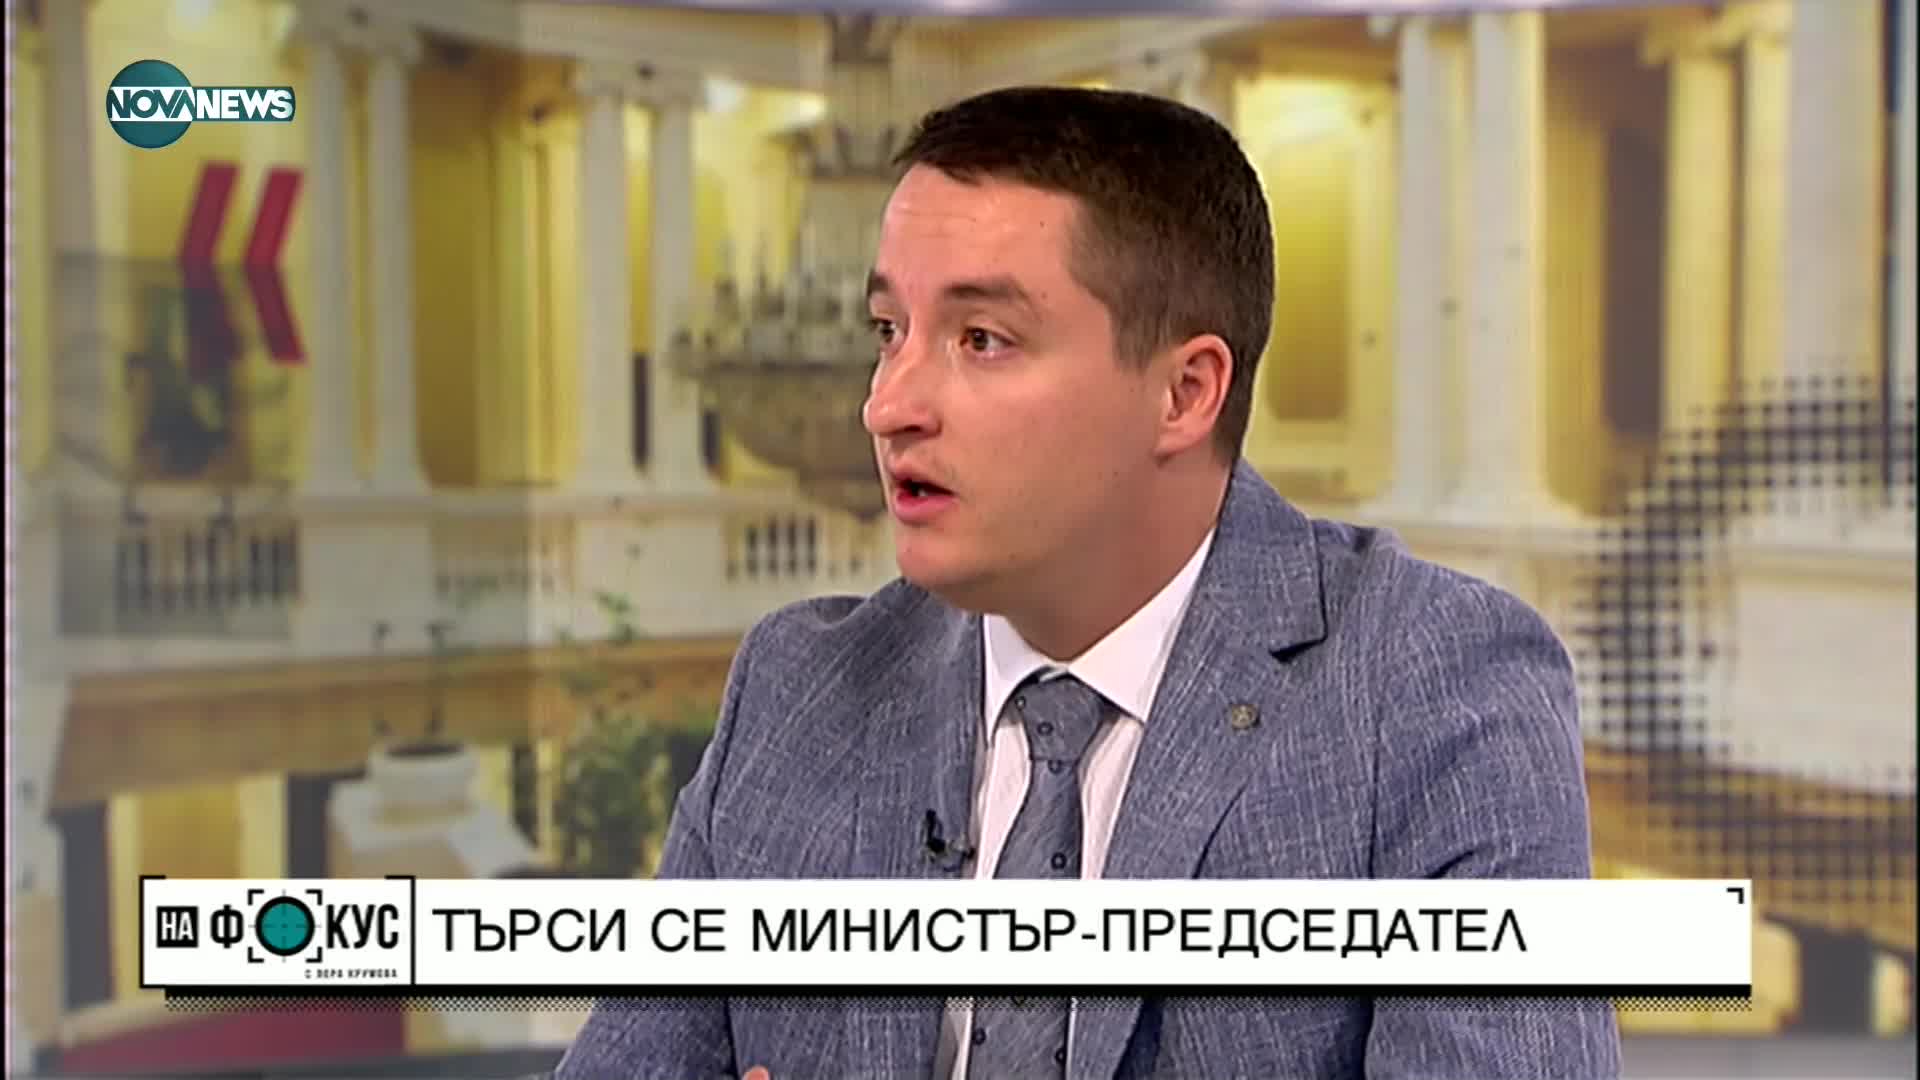 Божанков, БСП: Нормално е премиерът да е излъчен от ПП